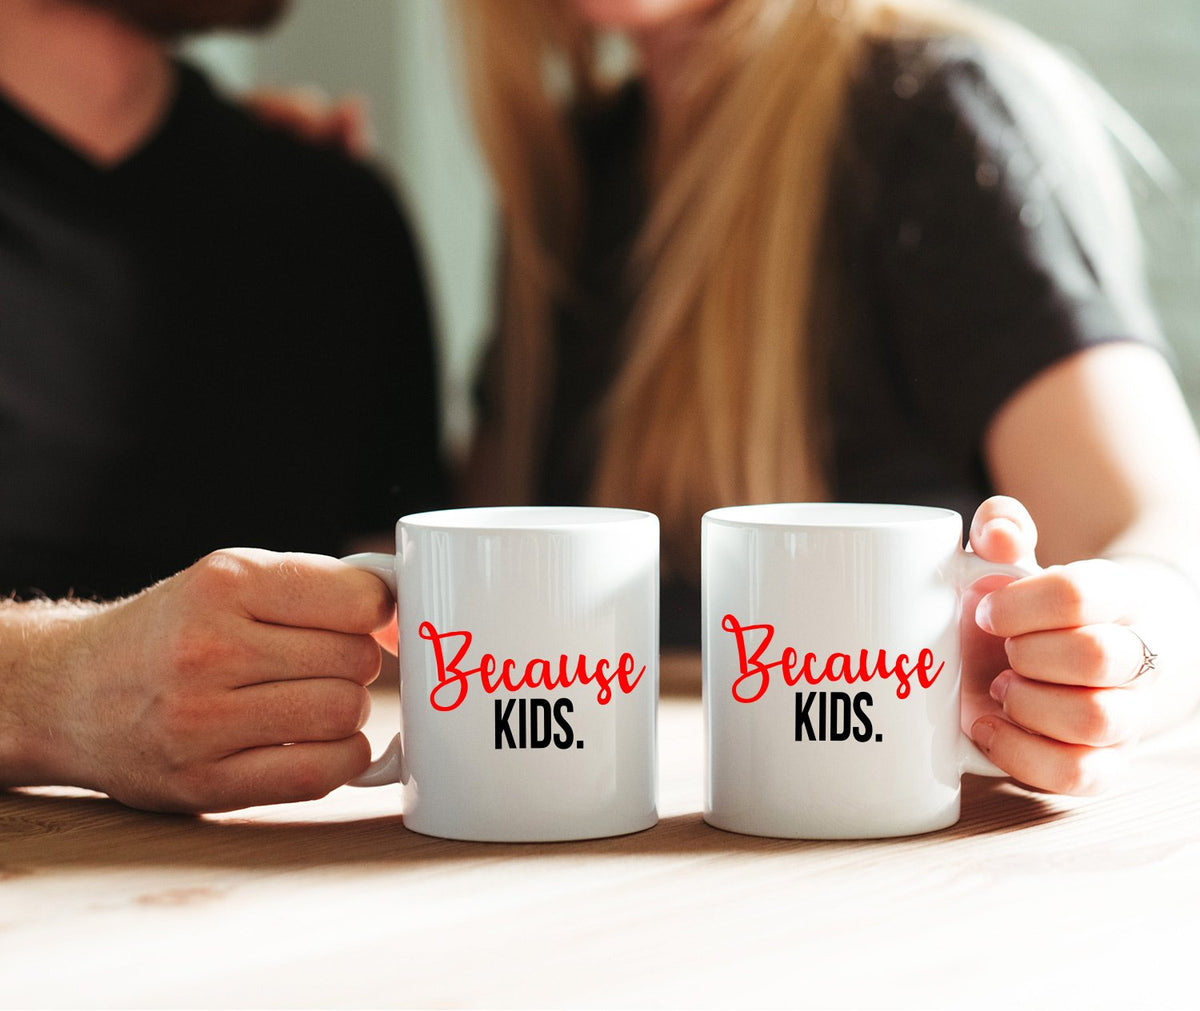 Because Kids - Ceramic Coffee Mug